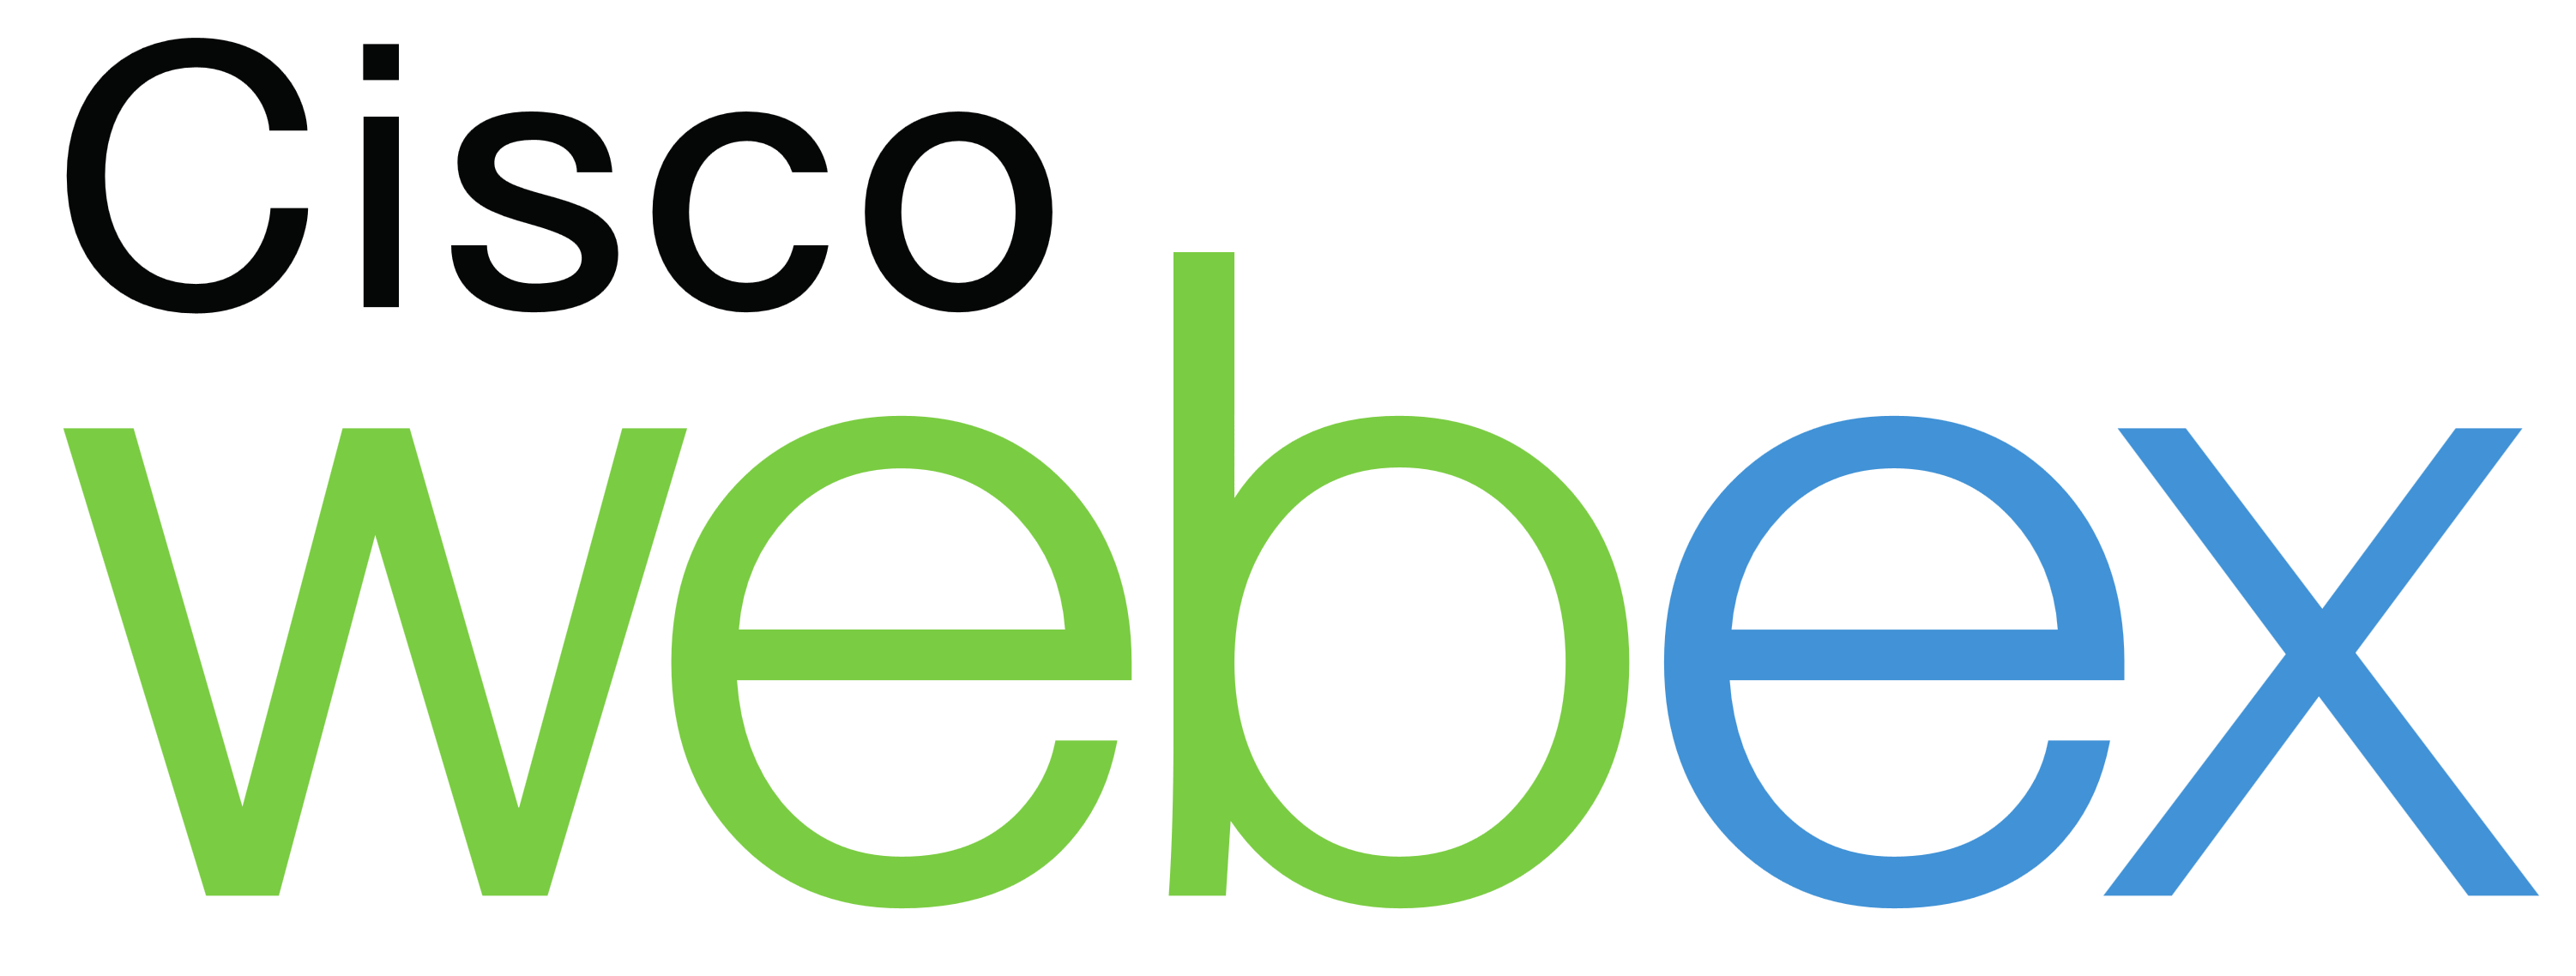 Cisco logo imagen Transparente